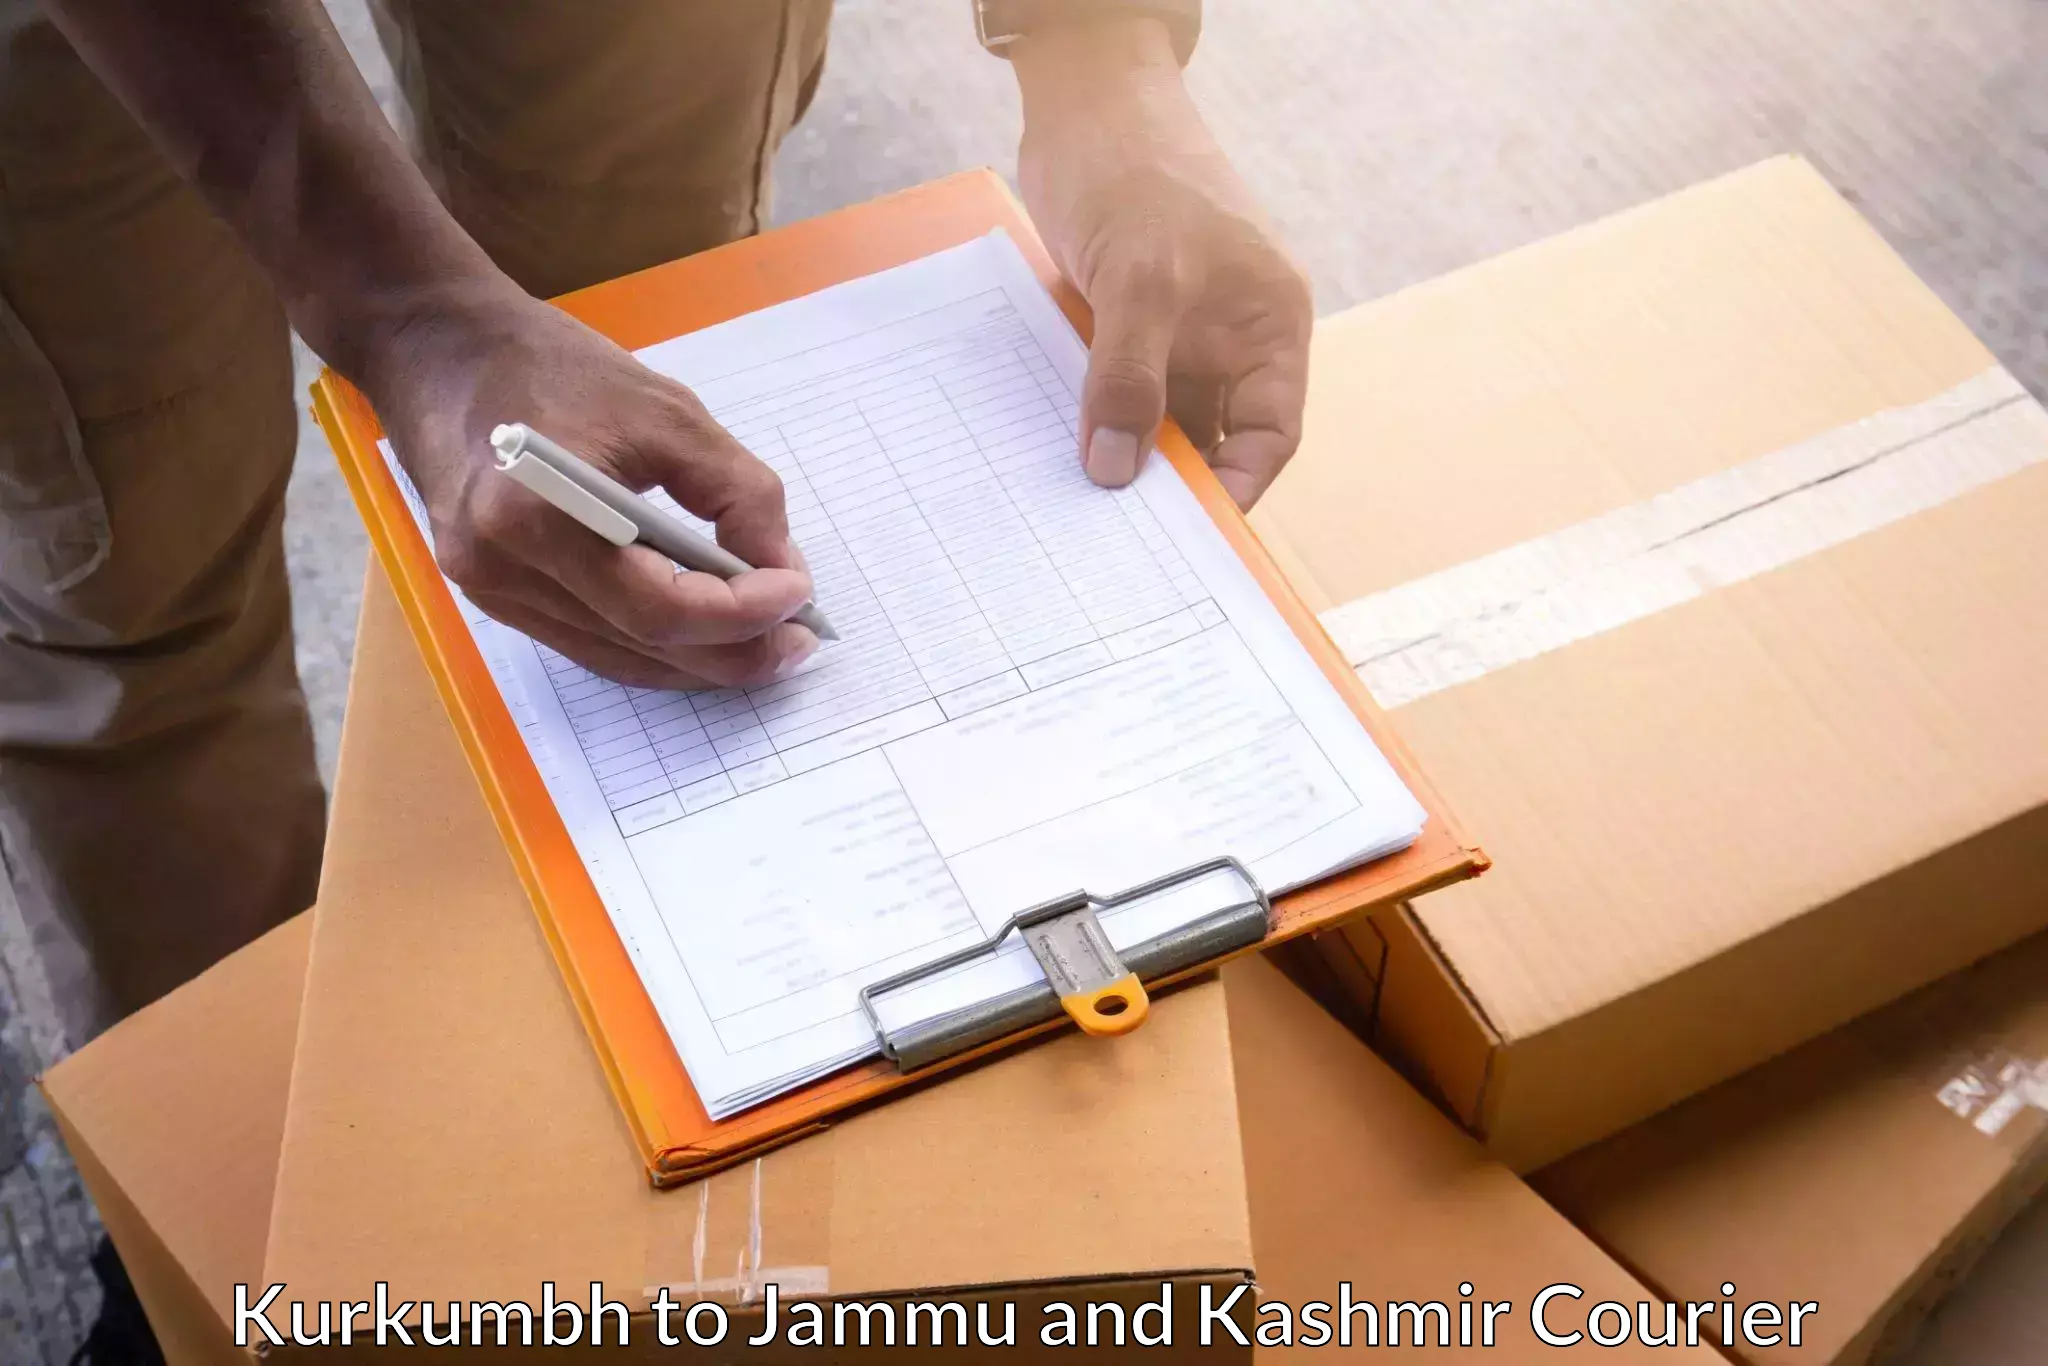 International courier networks Kurkumbh to Kupwara